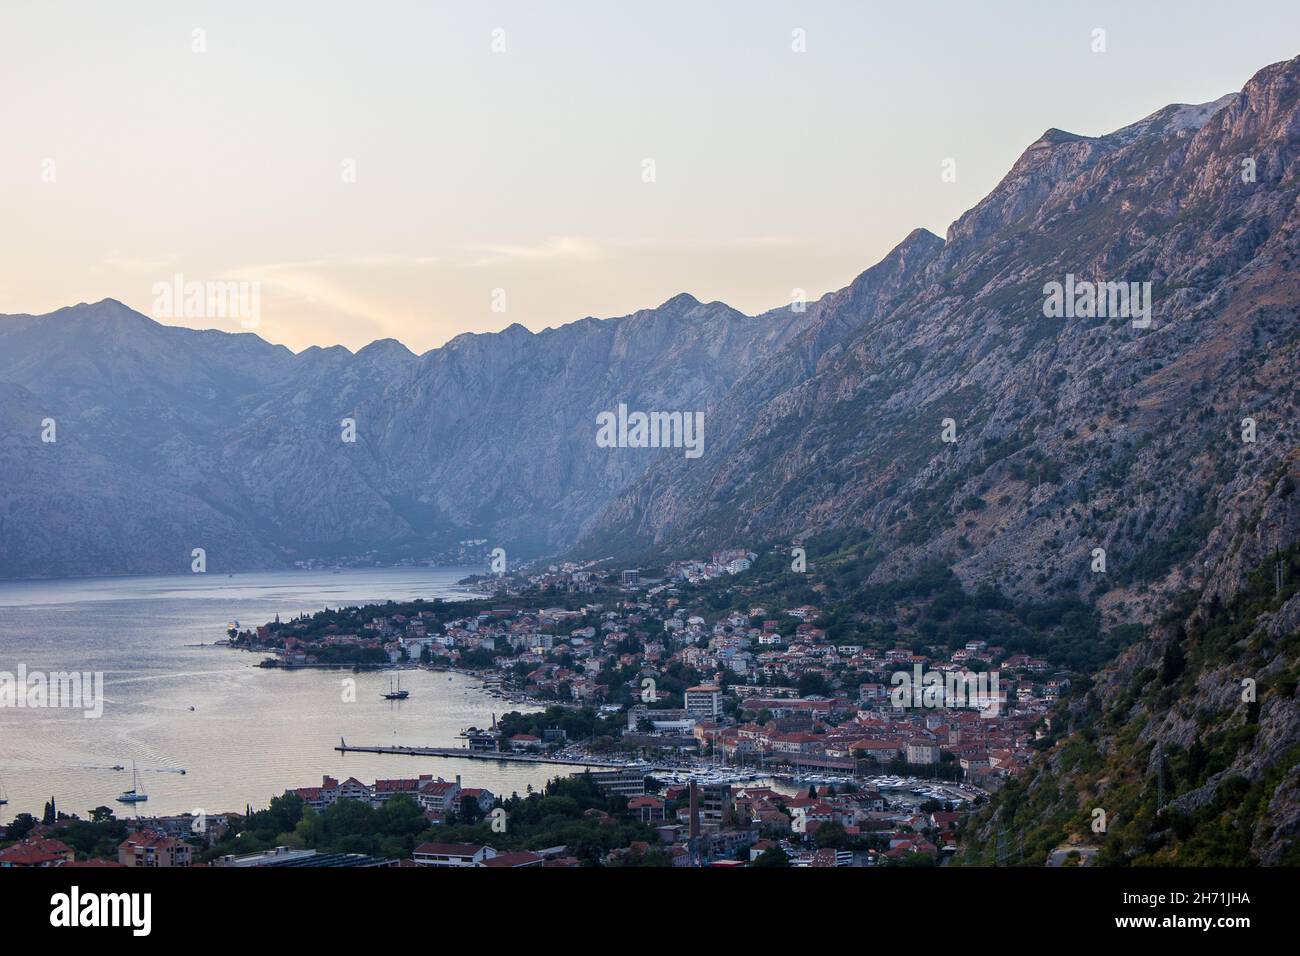 View of Kotor in Boka Kotorska Bay, Montenegro Stock Photo